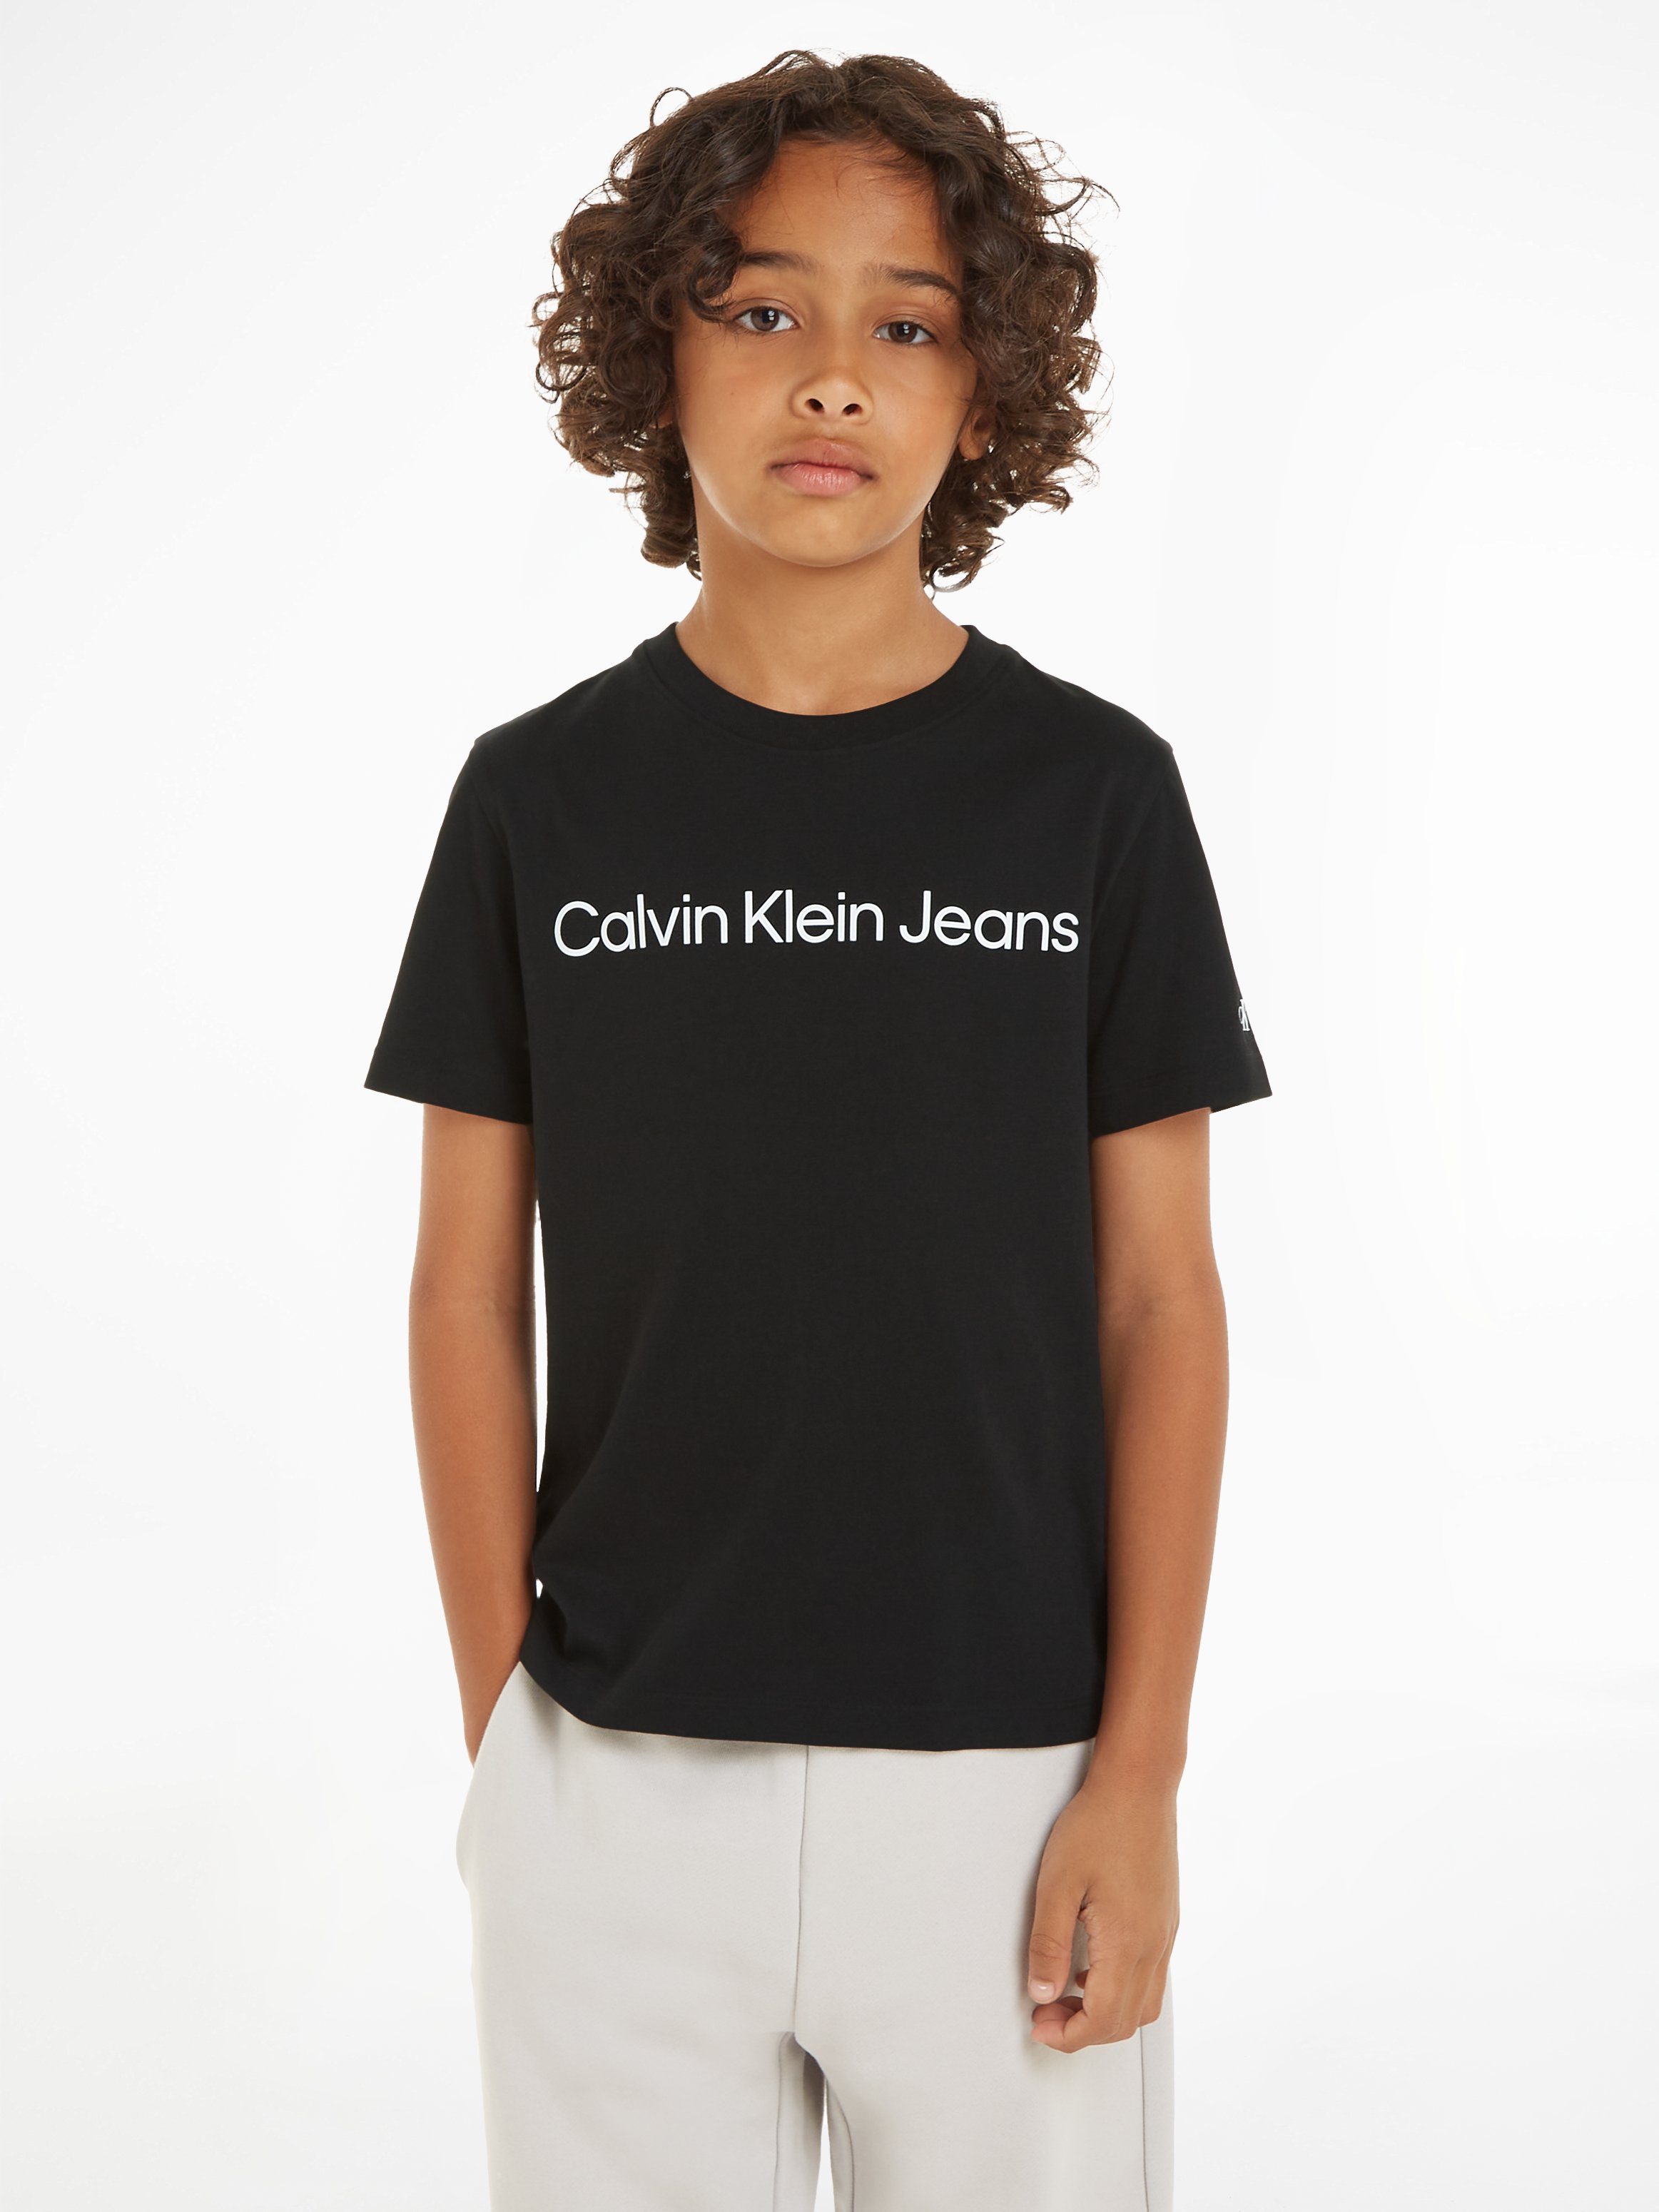 Calvin Klein Jeans Sweatshirt INST. LOGO SS T-SHIRT für Kinder bis 16 Jahre